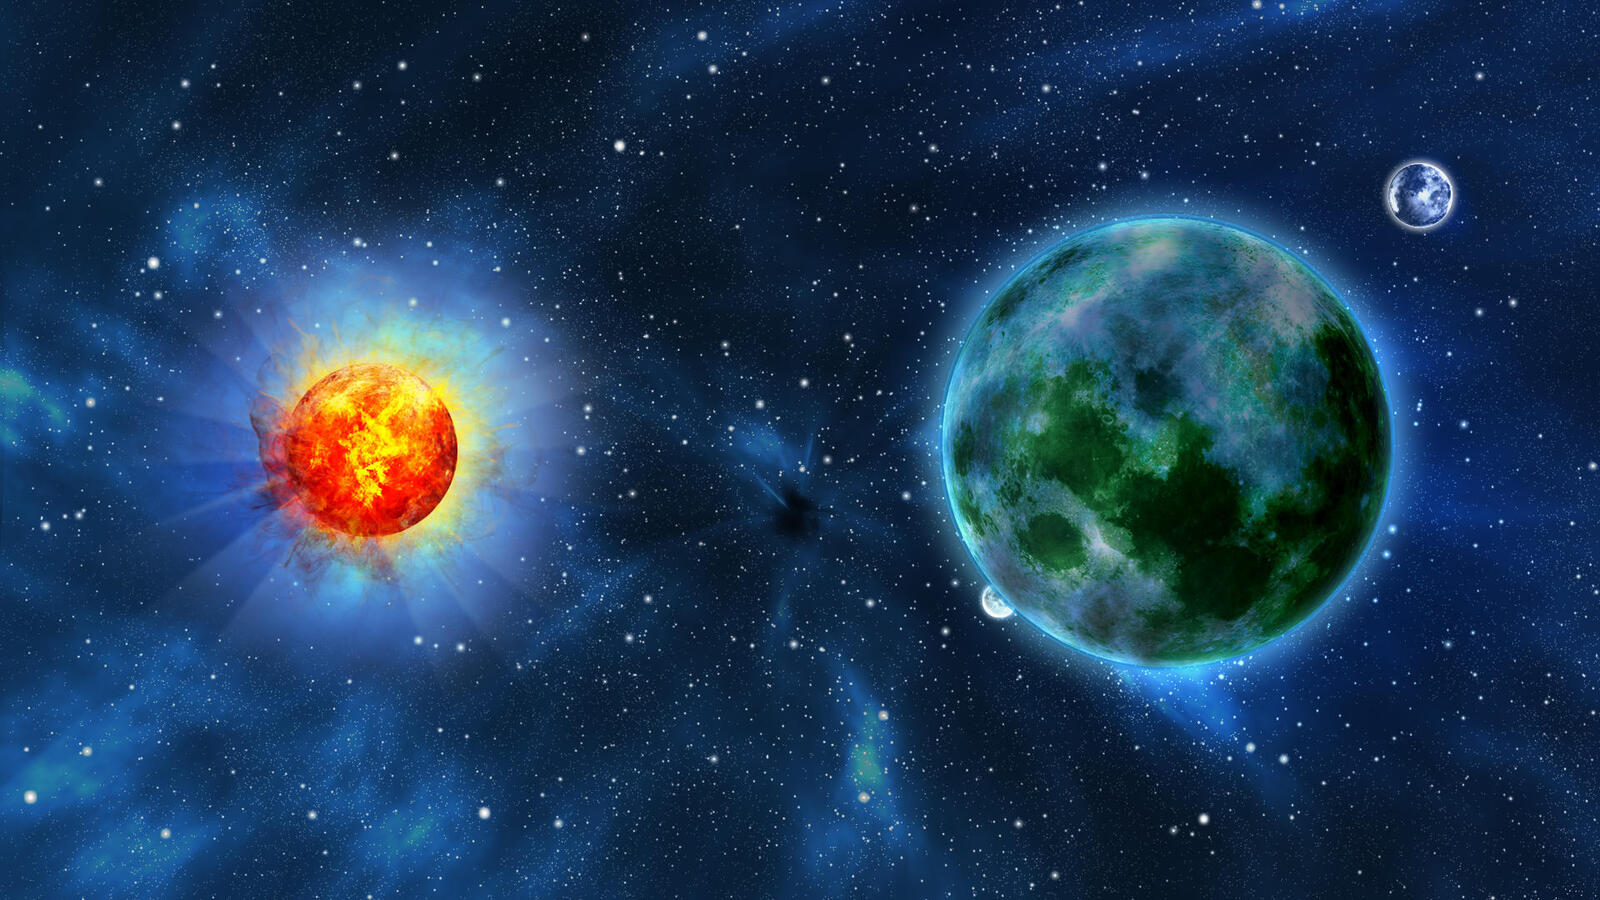 Обои космос две планеты солнце на рабочий стол